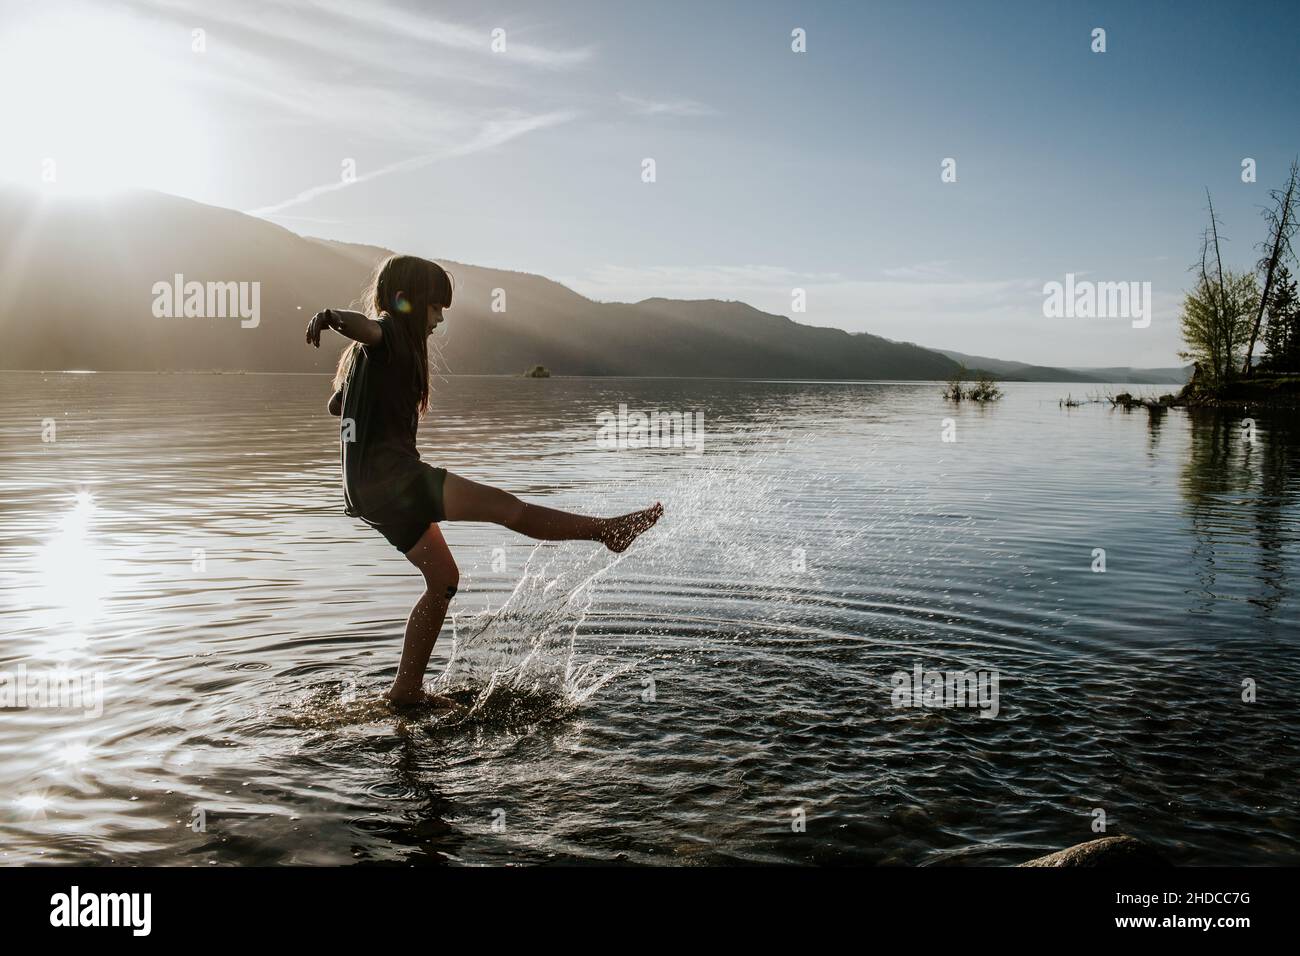 Une jeune fille se donne à coups de pied et éclabousse dans l'eau d'un lac Banque D'Images